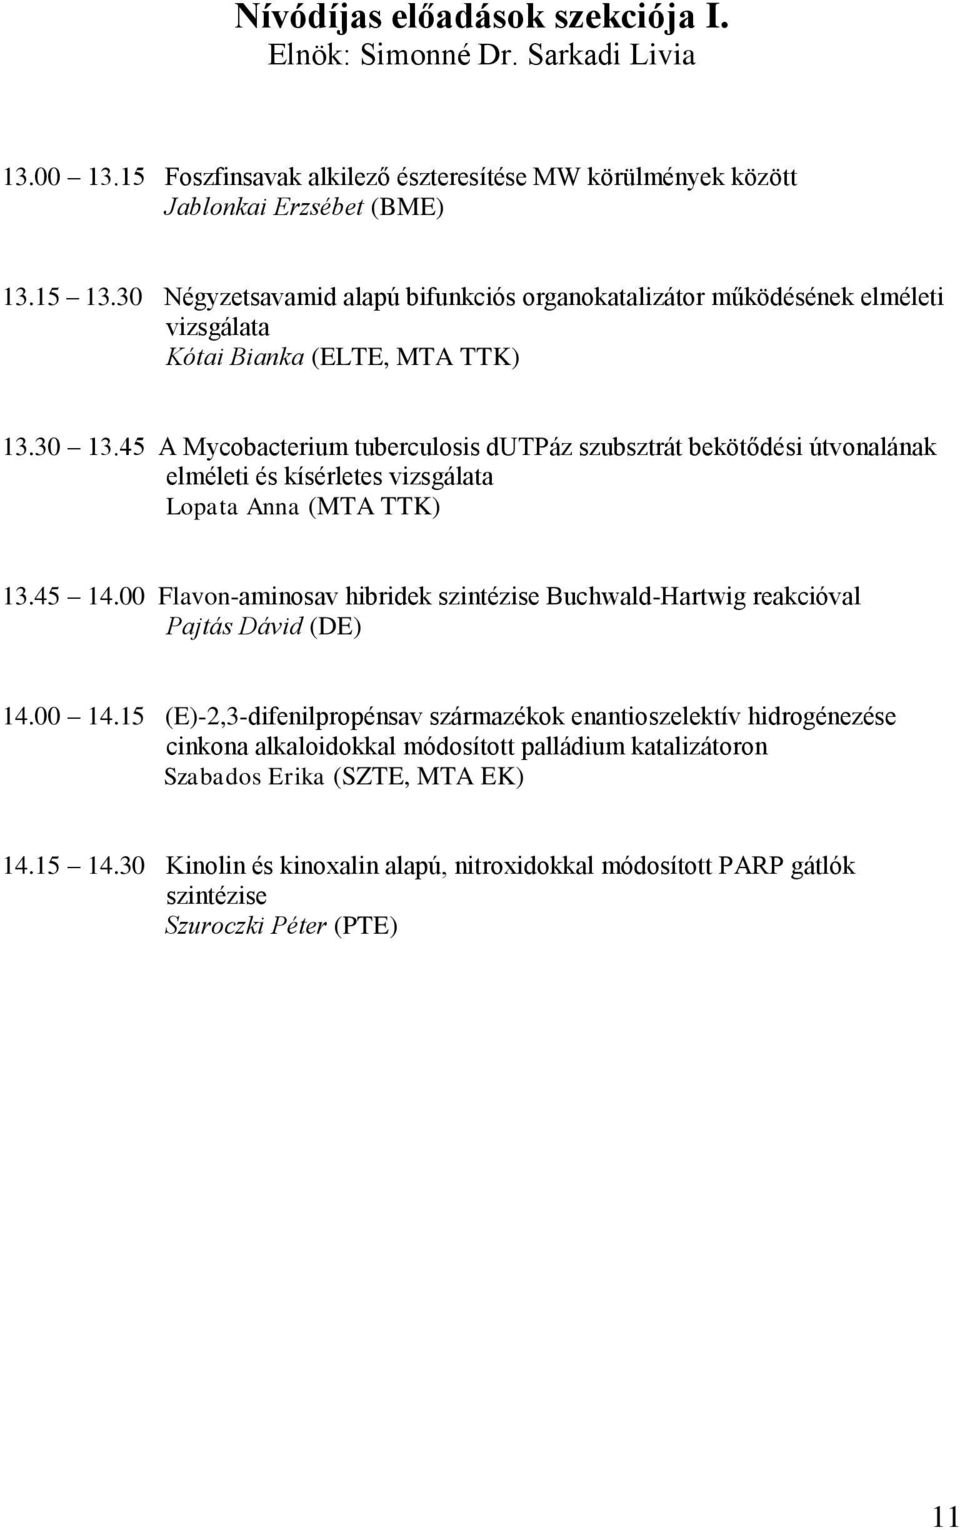 45 A Mycobacterium tuberculosis dutpáz szubsztrát bekötődési útvonalának elméleti és kísérletes vizsgálata Lopata Anna (MTA TTK) 13.45 14.